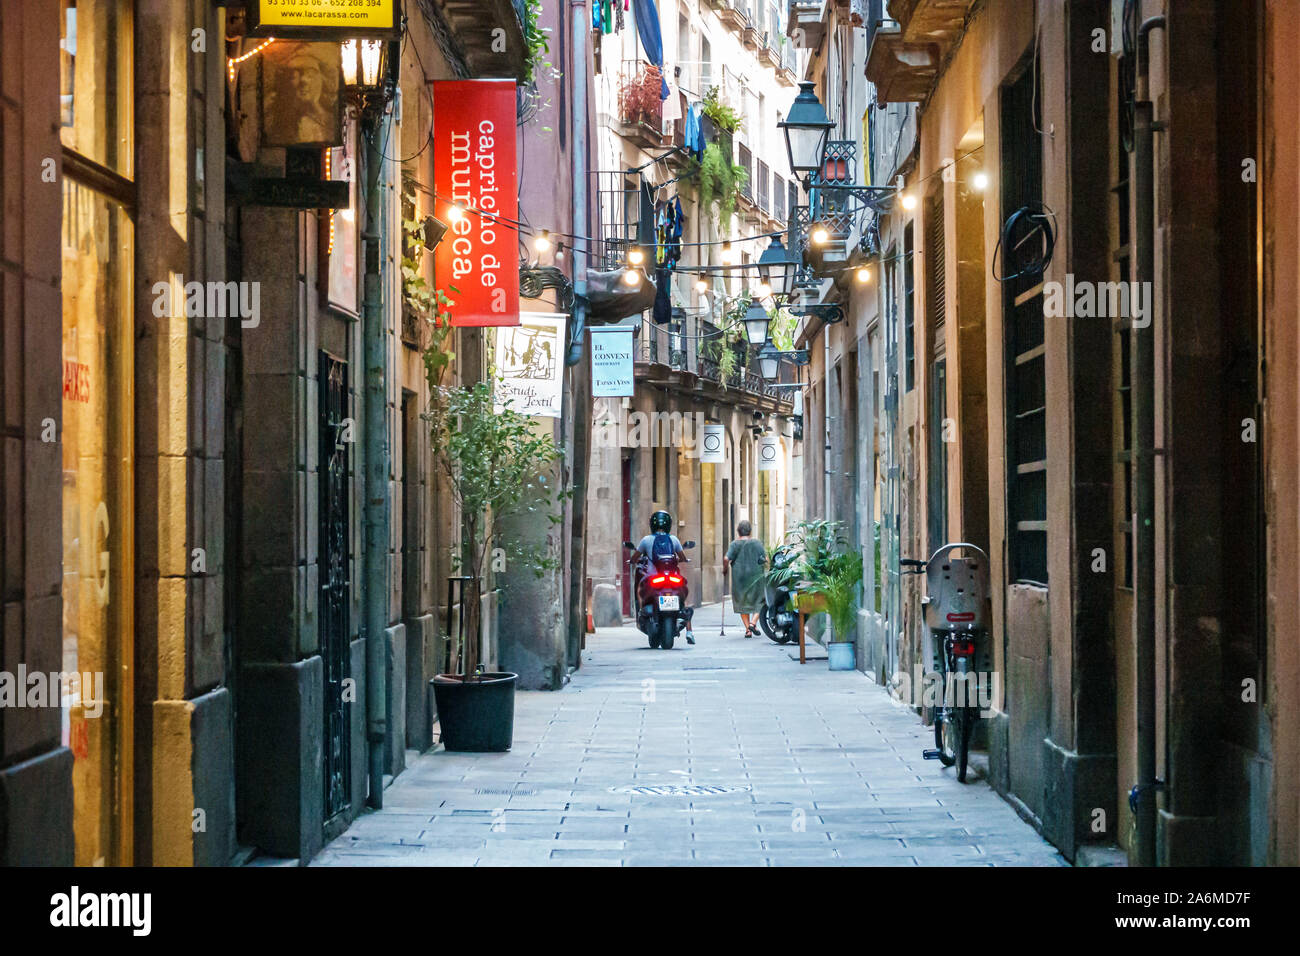 Barcellona Spagna,Catalonia Ciutat Vella,centro storico,El Born,Carrer del Brosoli,strada stretta,negozio insegne,donna,uomo,moto,ES190903169 Foto Stock